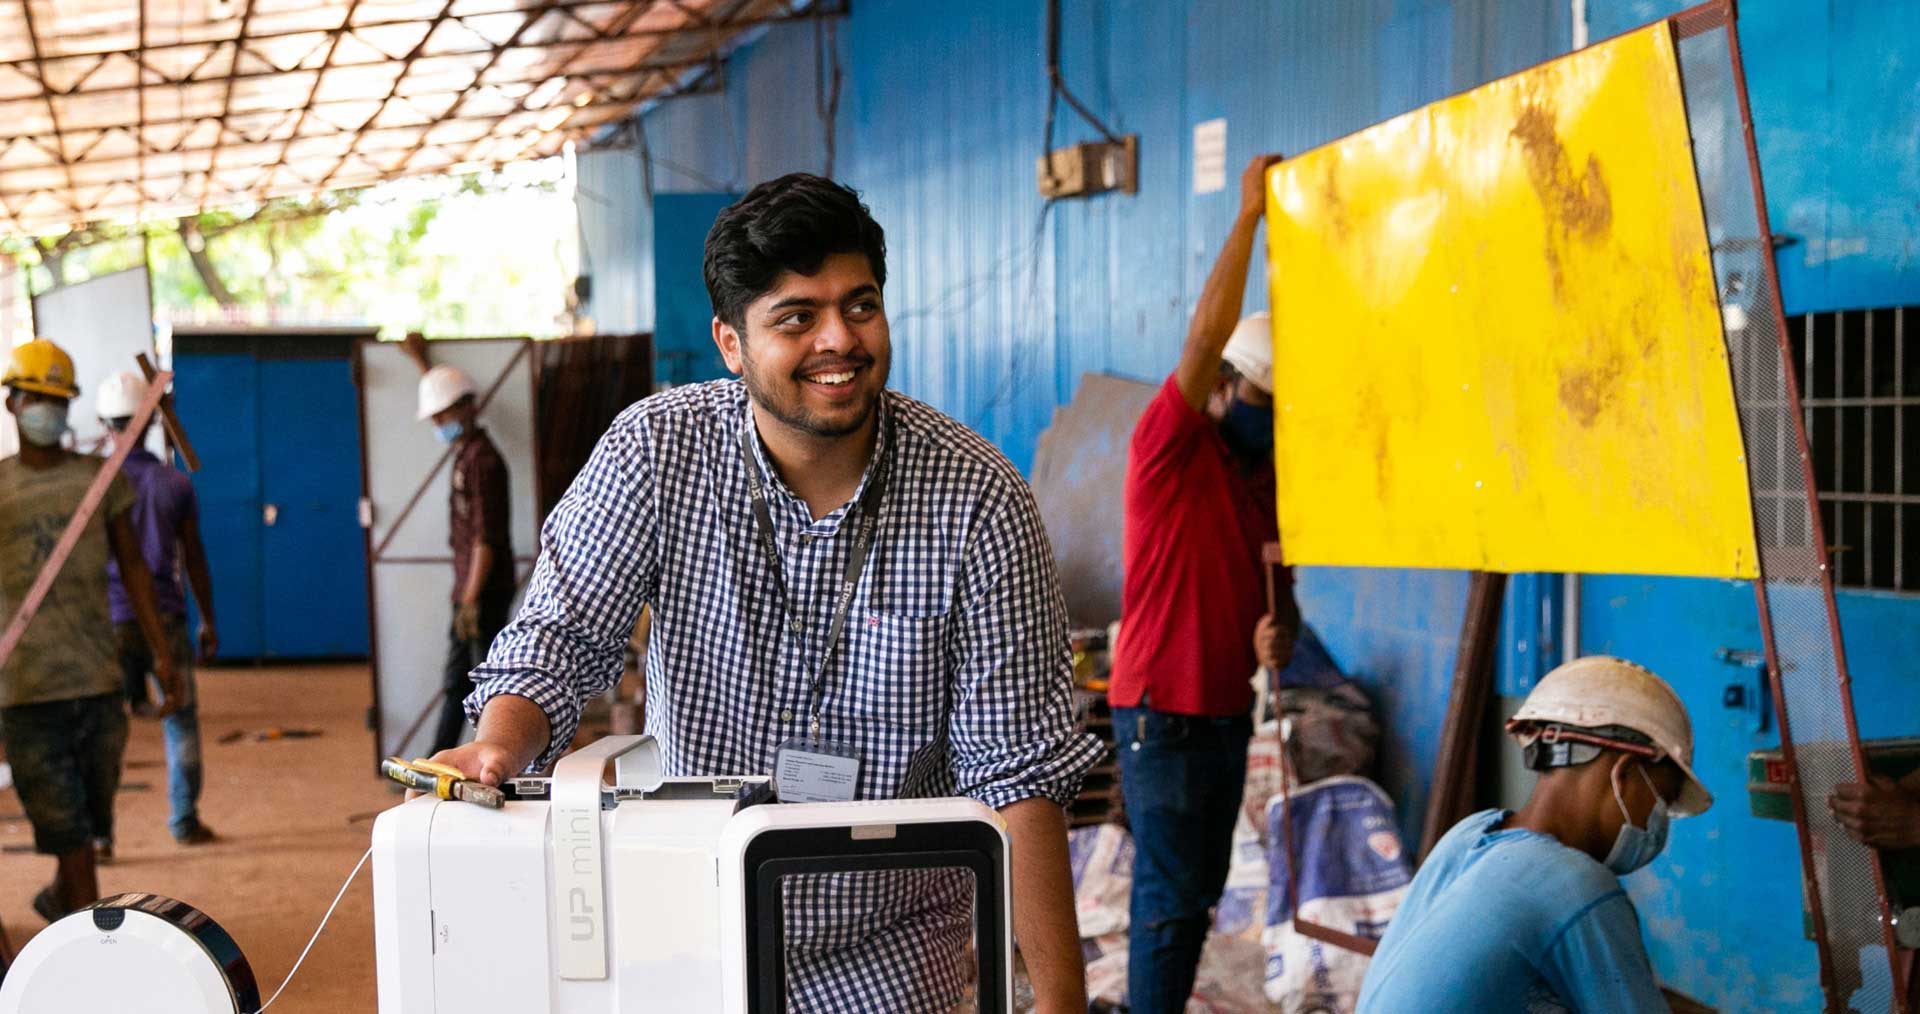 Калдип Бандху Ариал позирует фотографу в производственном центре BRAC Kuchubunia в Кокс-Базаре, Бангладеш. (29 августа 2021 г.)